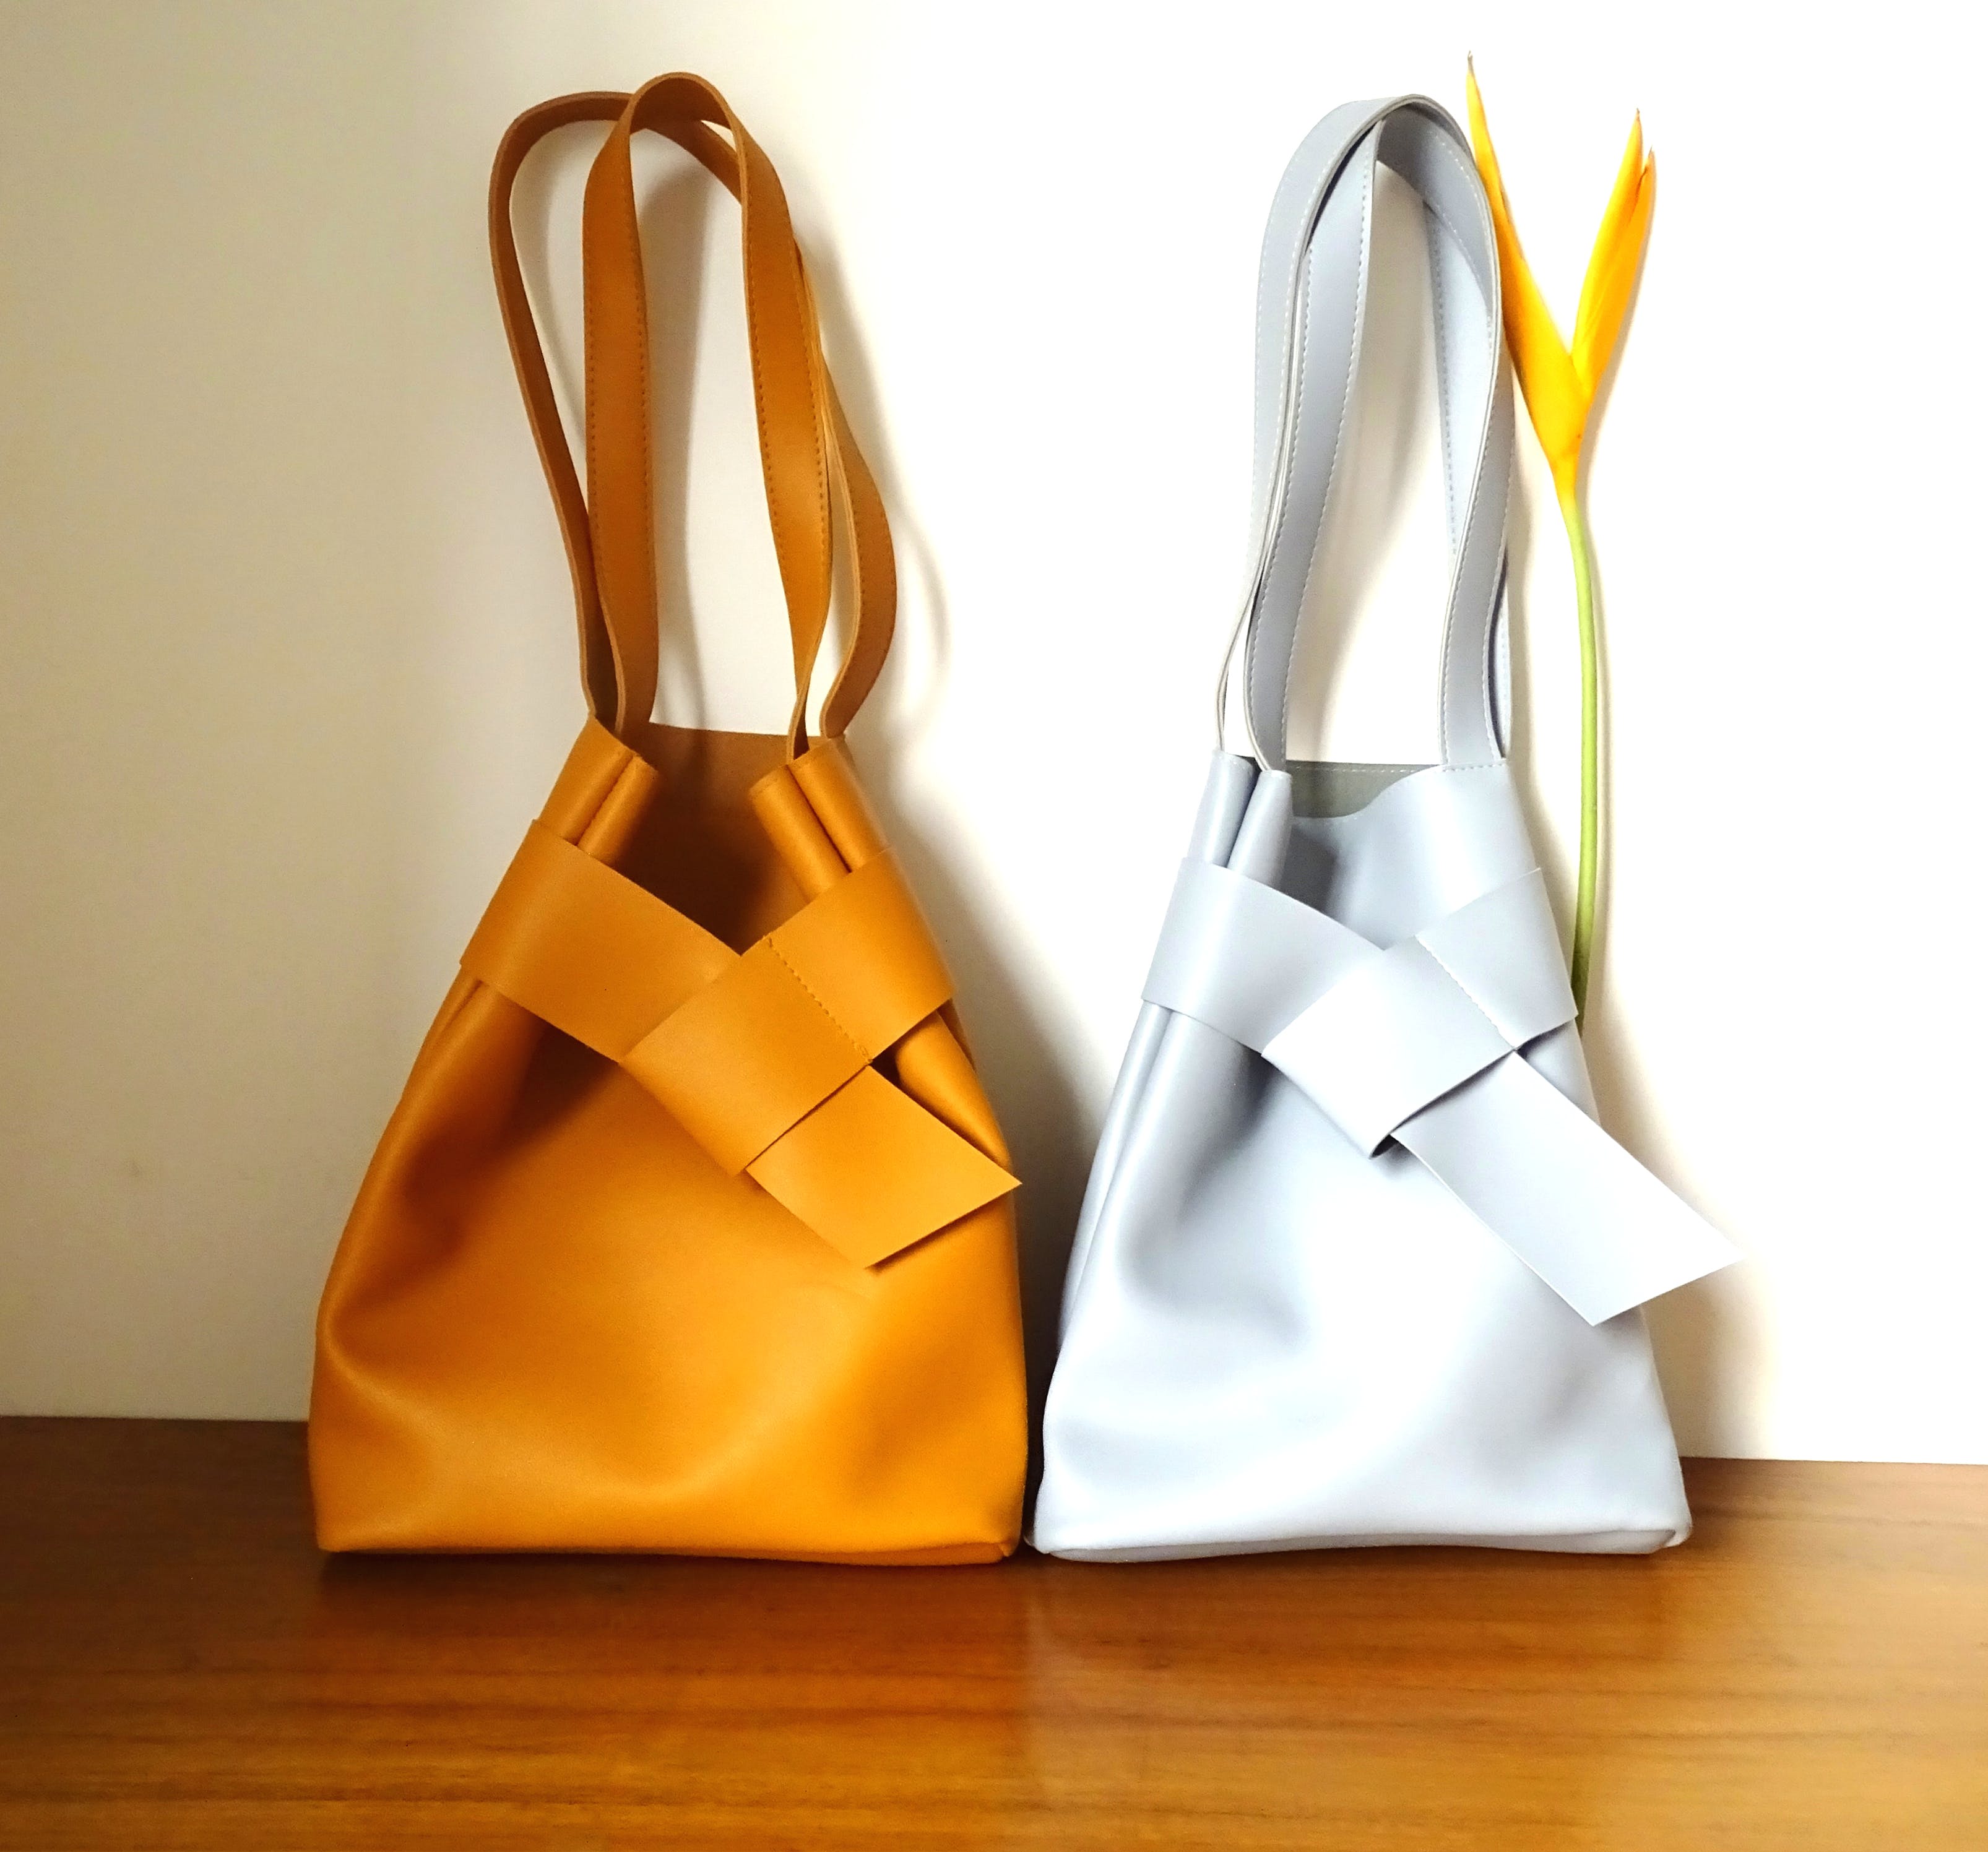 Handbag,Bag,Yellow,Hobo bag,Tote bag,Shoulder bag,Fashion accessory,Leather,Luggage and bags